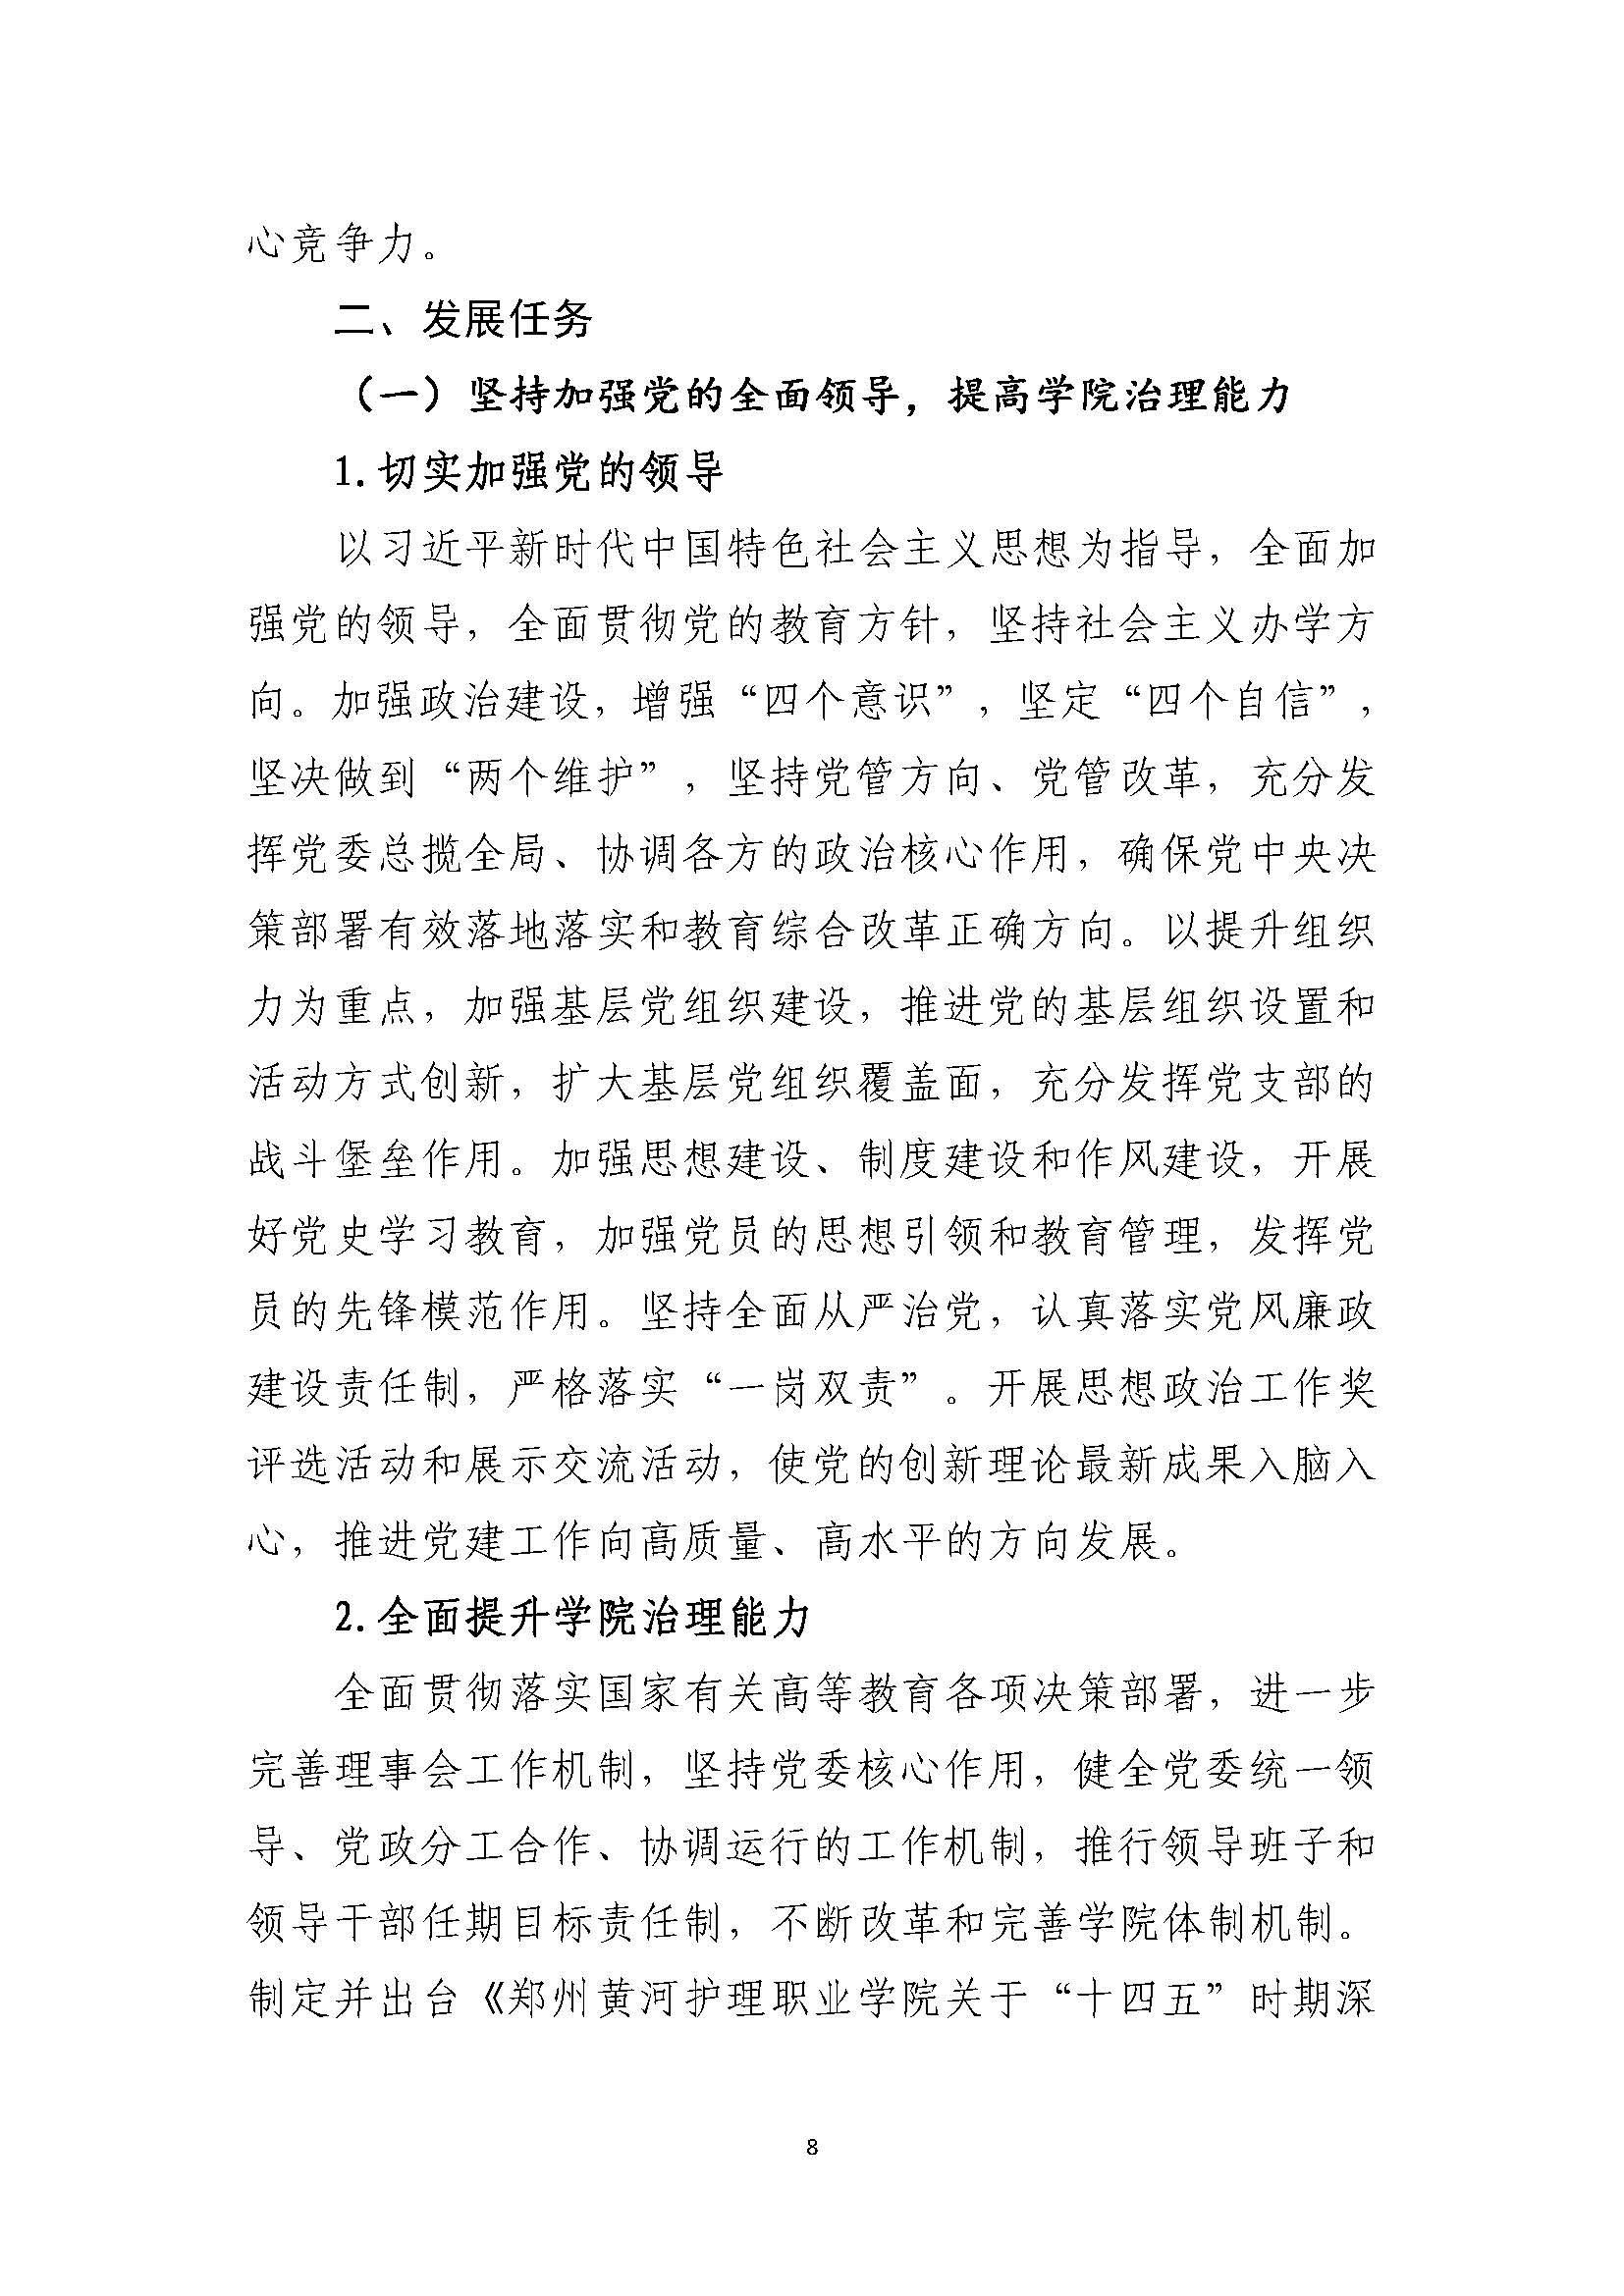 郑州黄河护理职业学院2021-2025年发展规划_页面_08.jpg